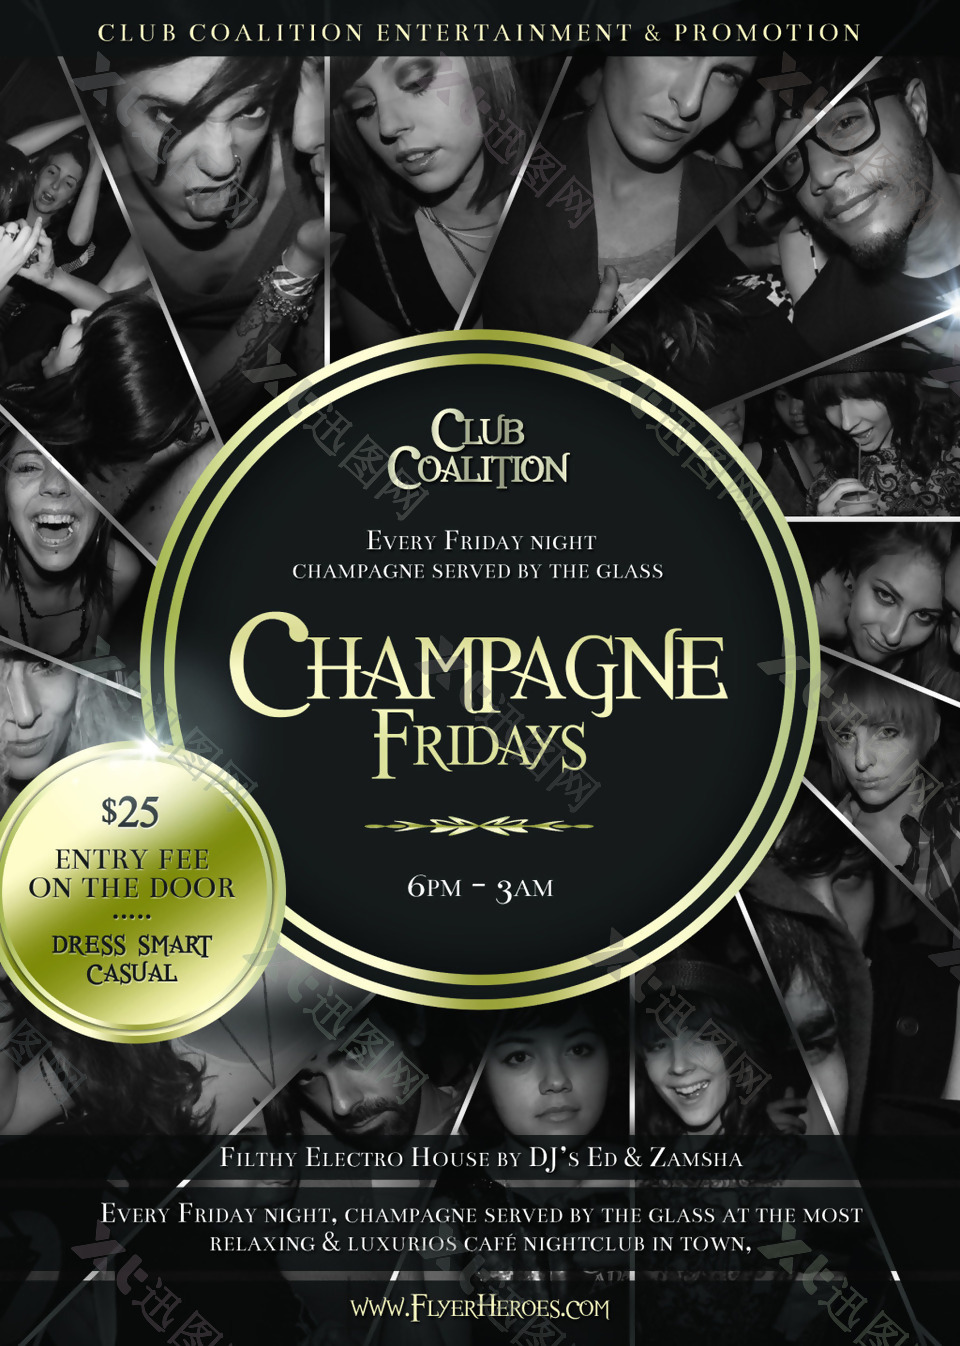 ChampagneFriday国外创意欧美风酒吧宣传海报宣传单页